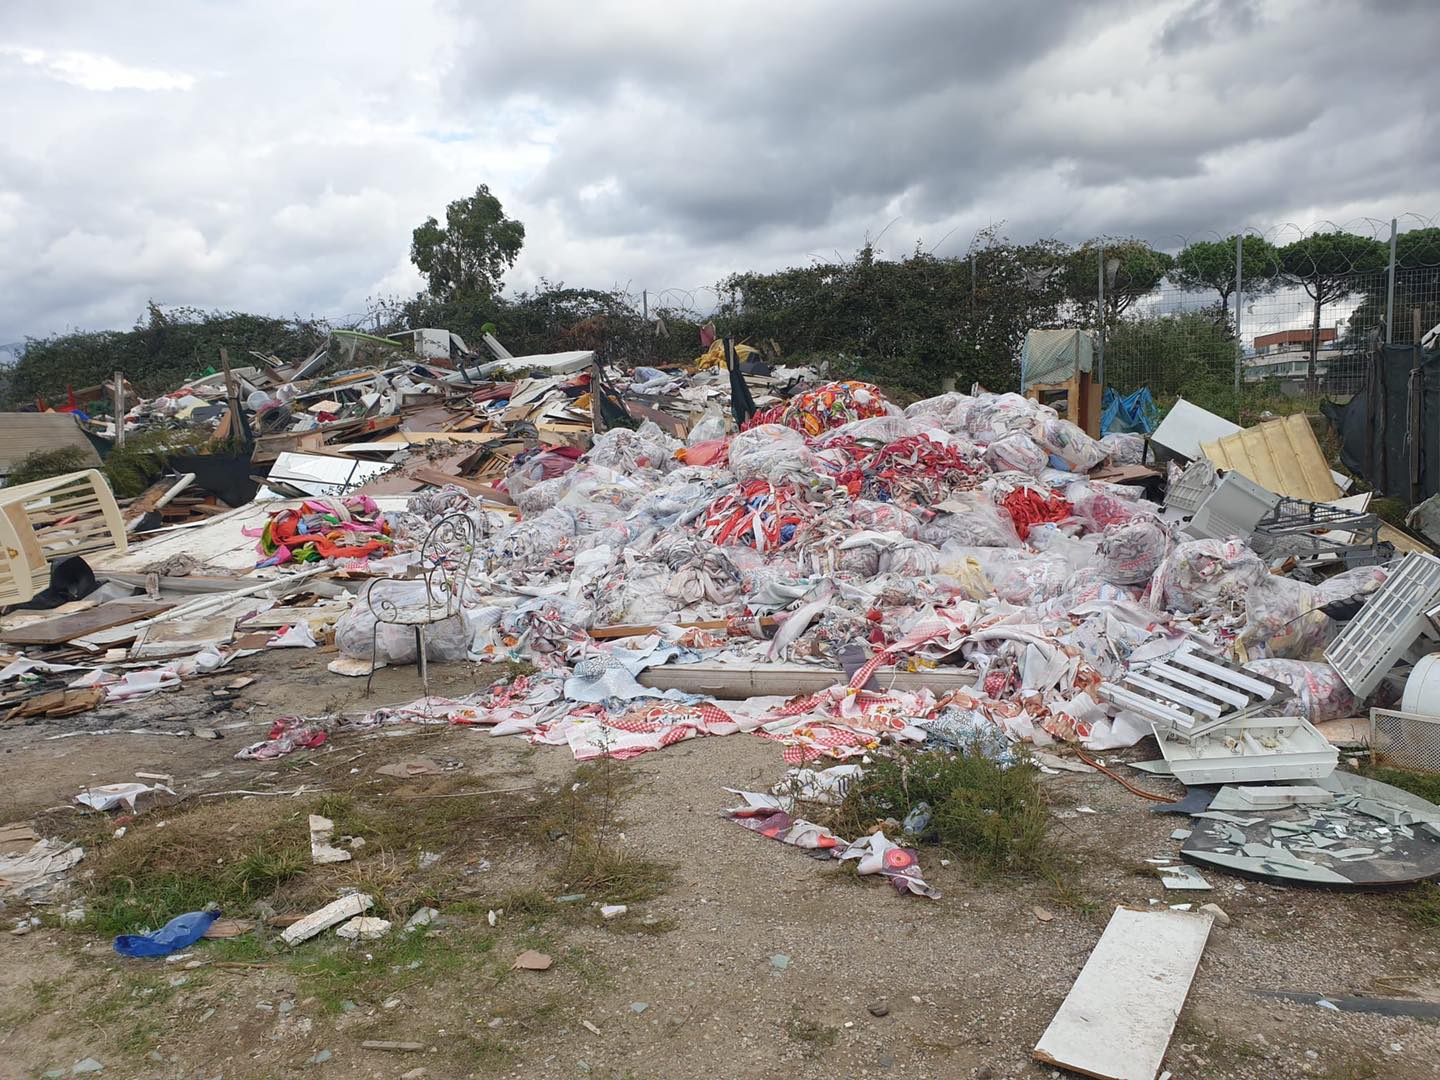 Imprenditore tessile di Quarto sversava rifiuti nel campo rom di Qualiano denunciato